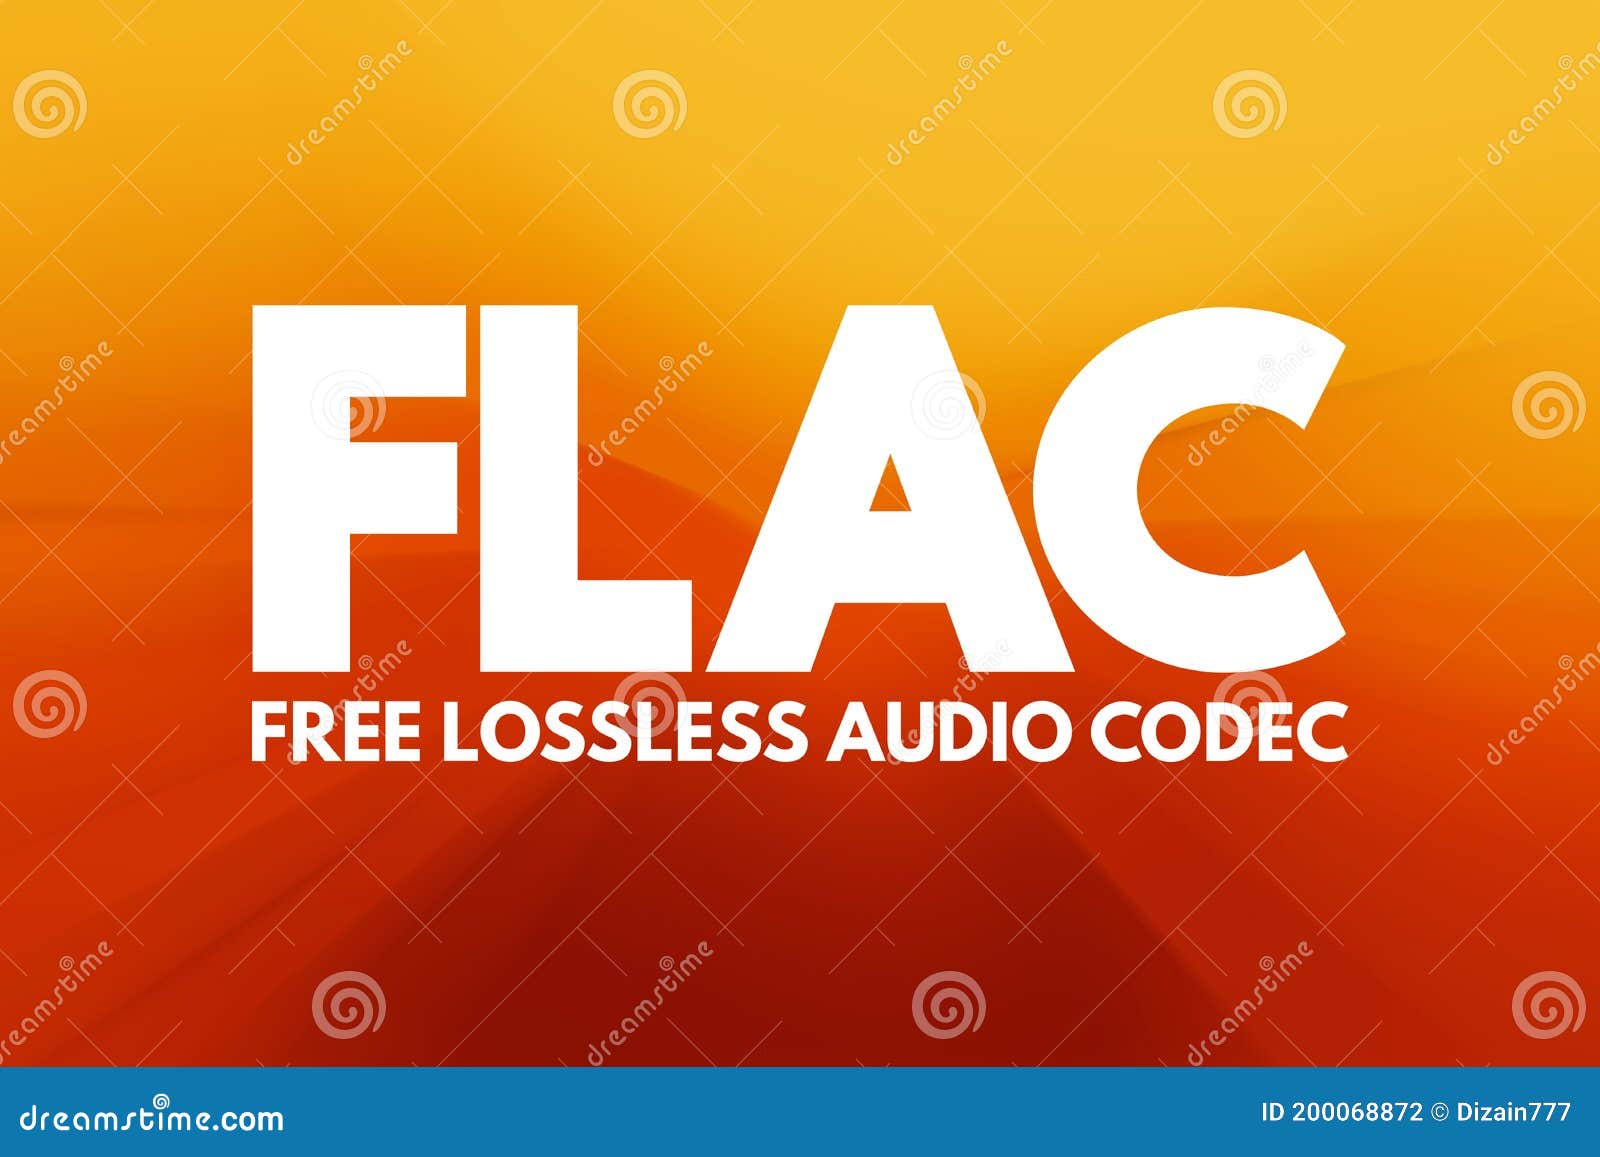 Flac что это. FLAC. Flar. FLAC file. Минимальное качество FLAC.